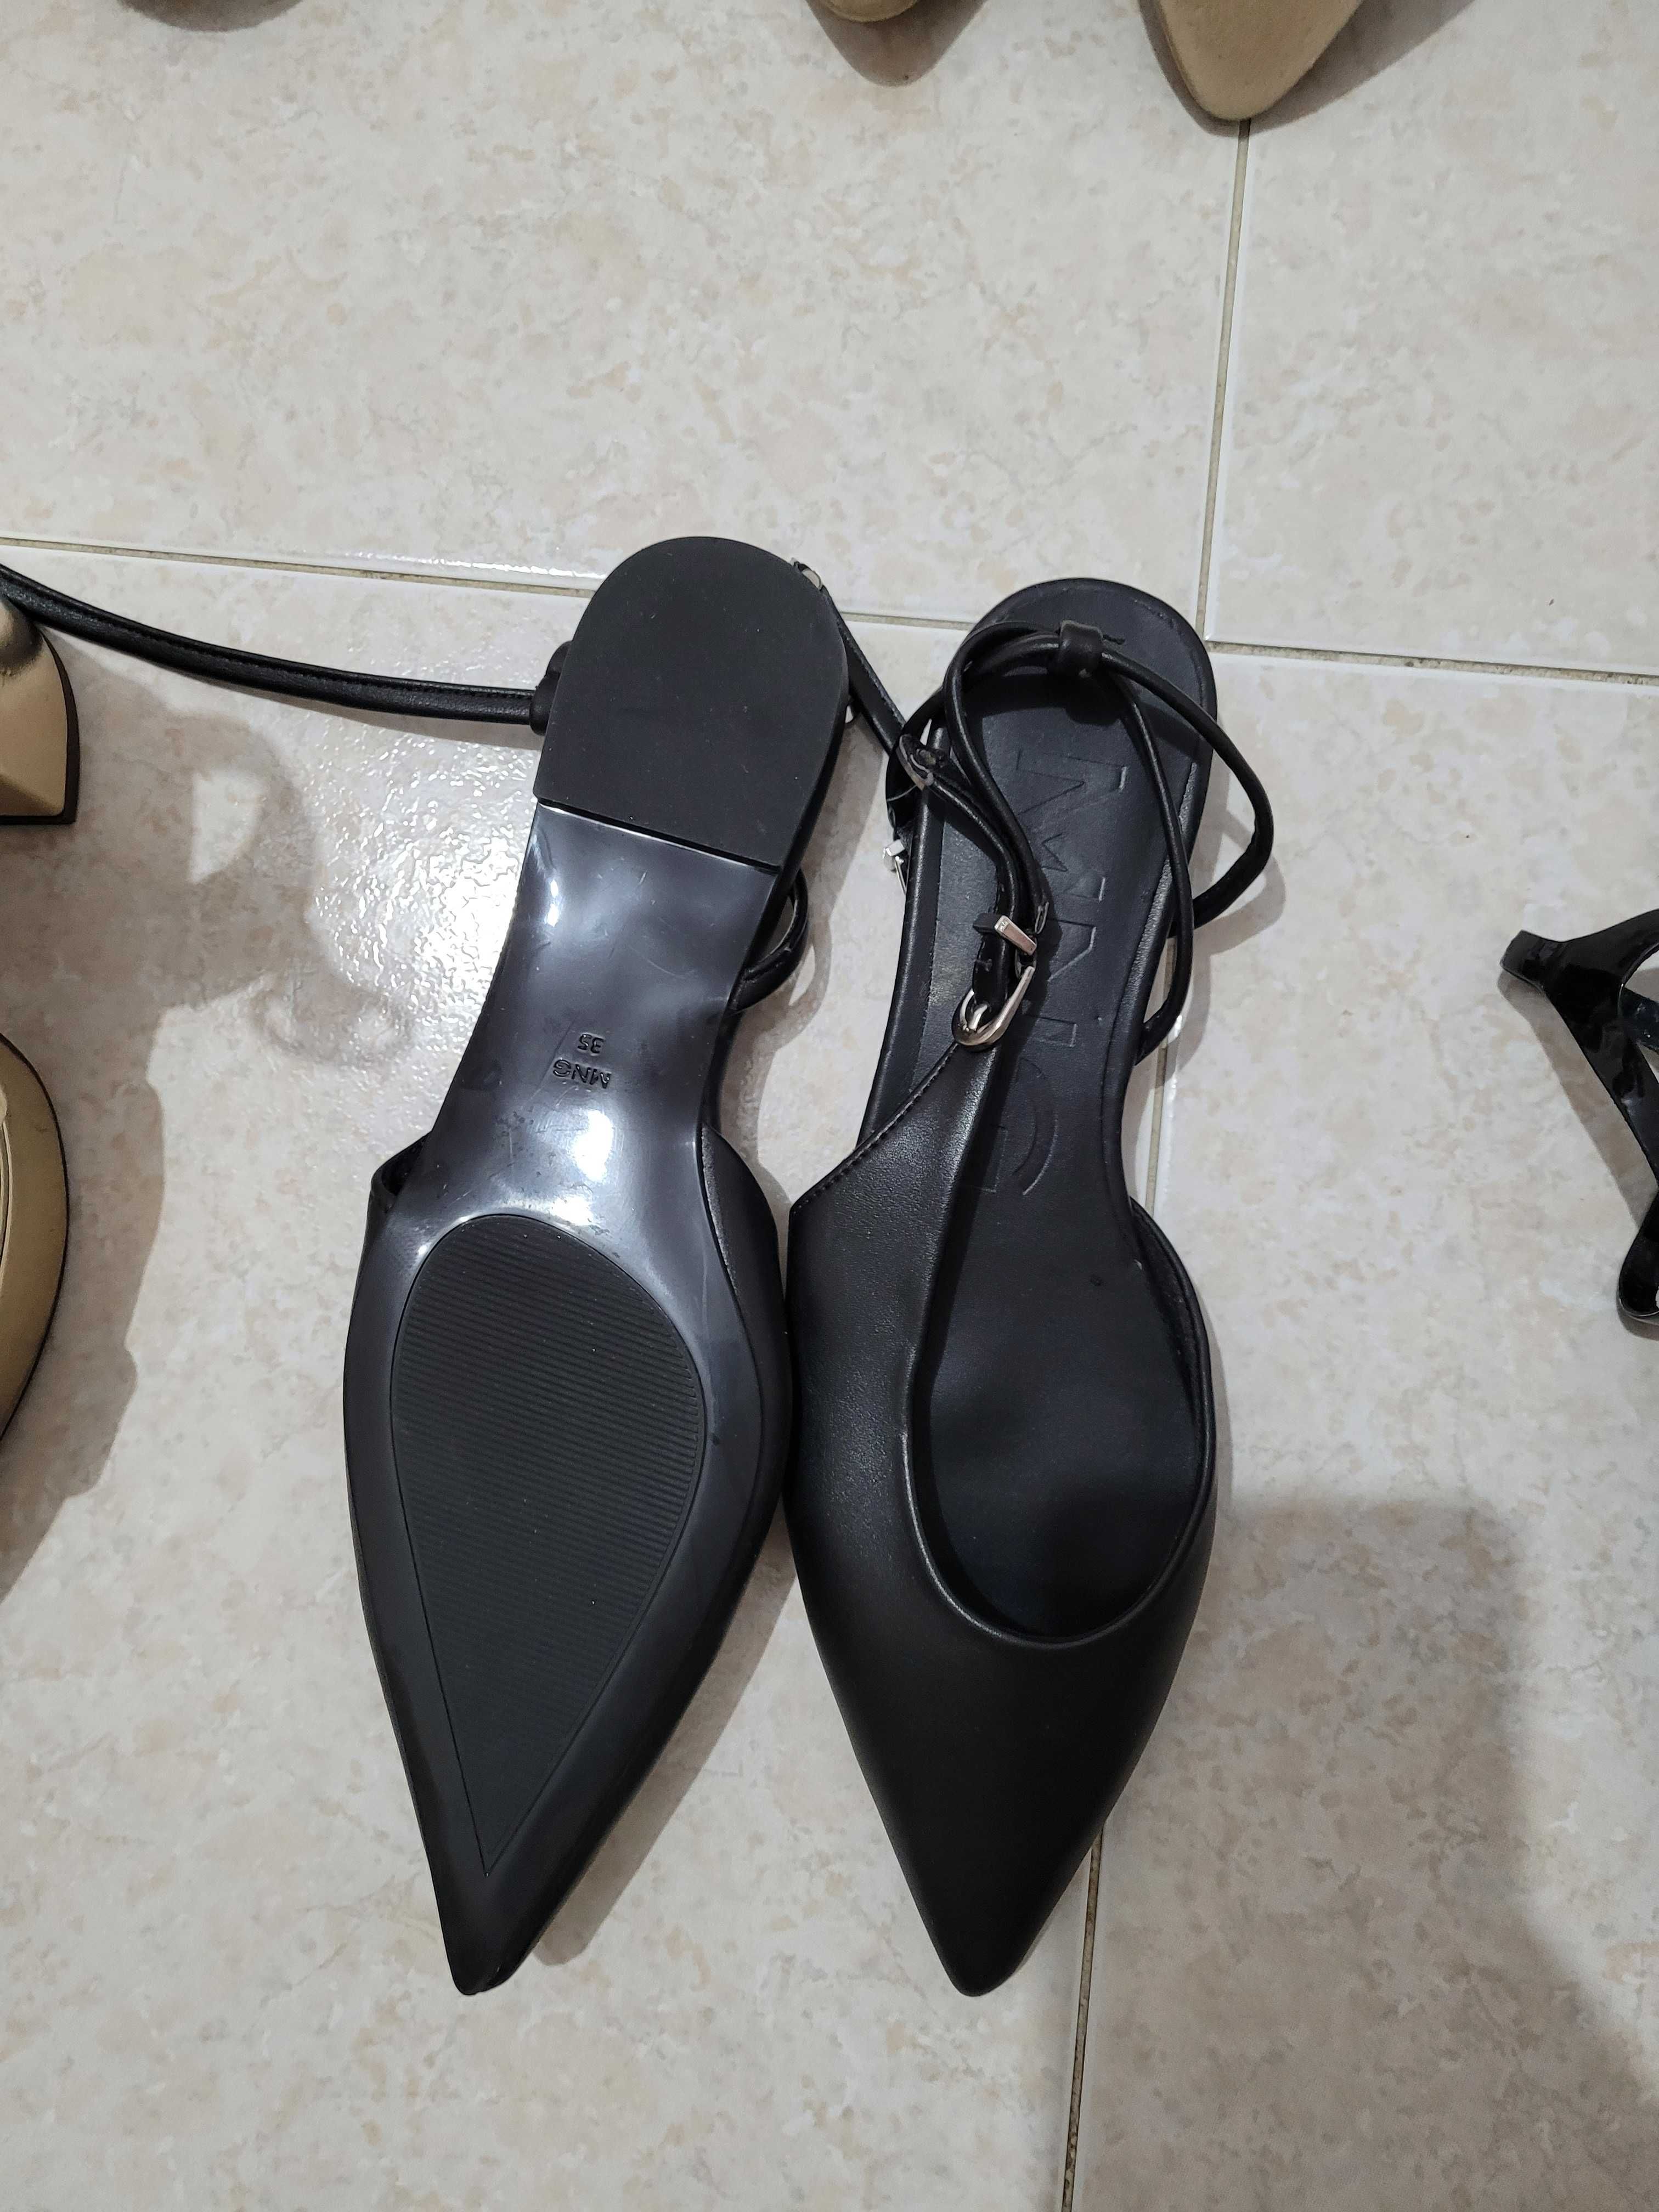 Sapatos de varias marcas e modelos